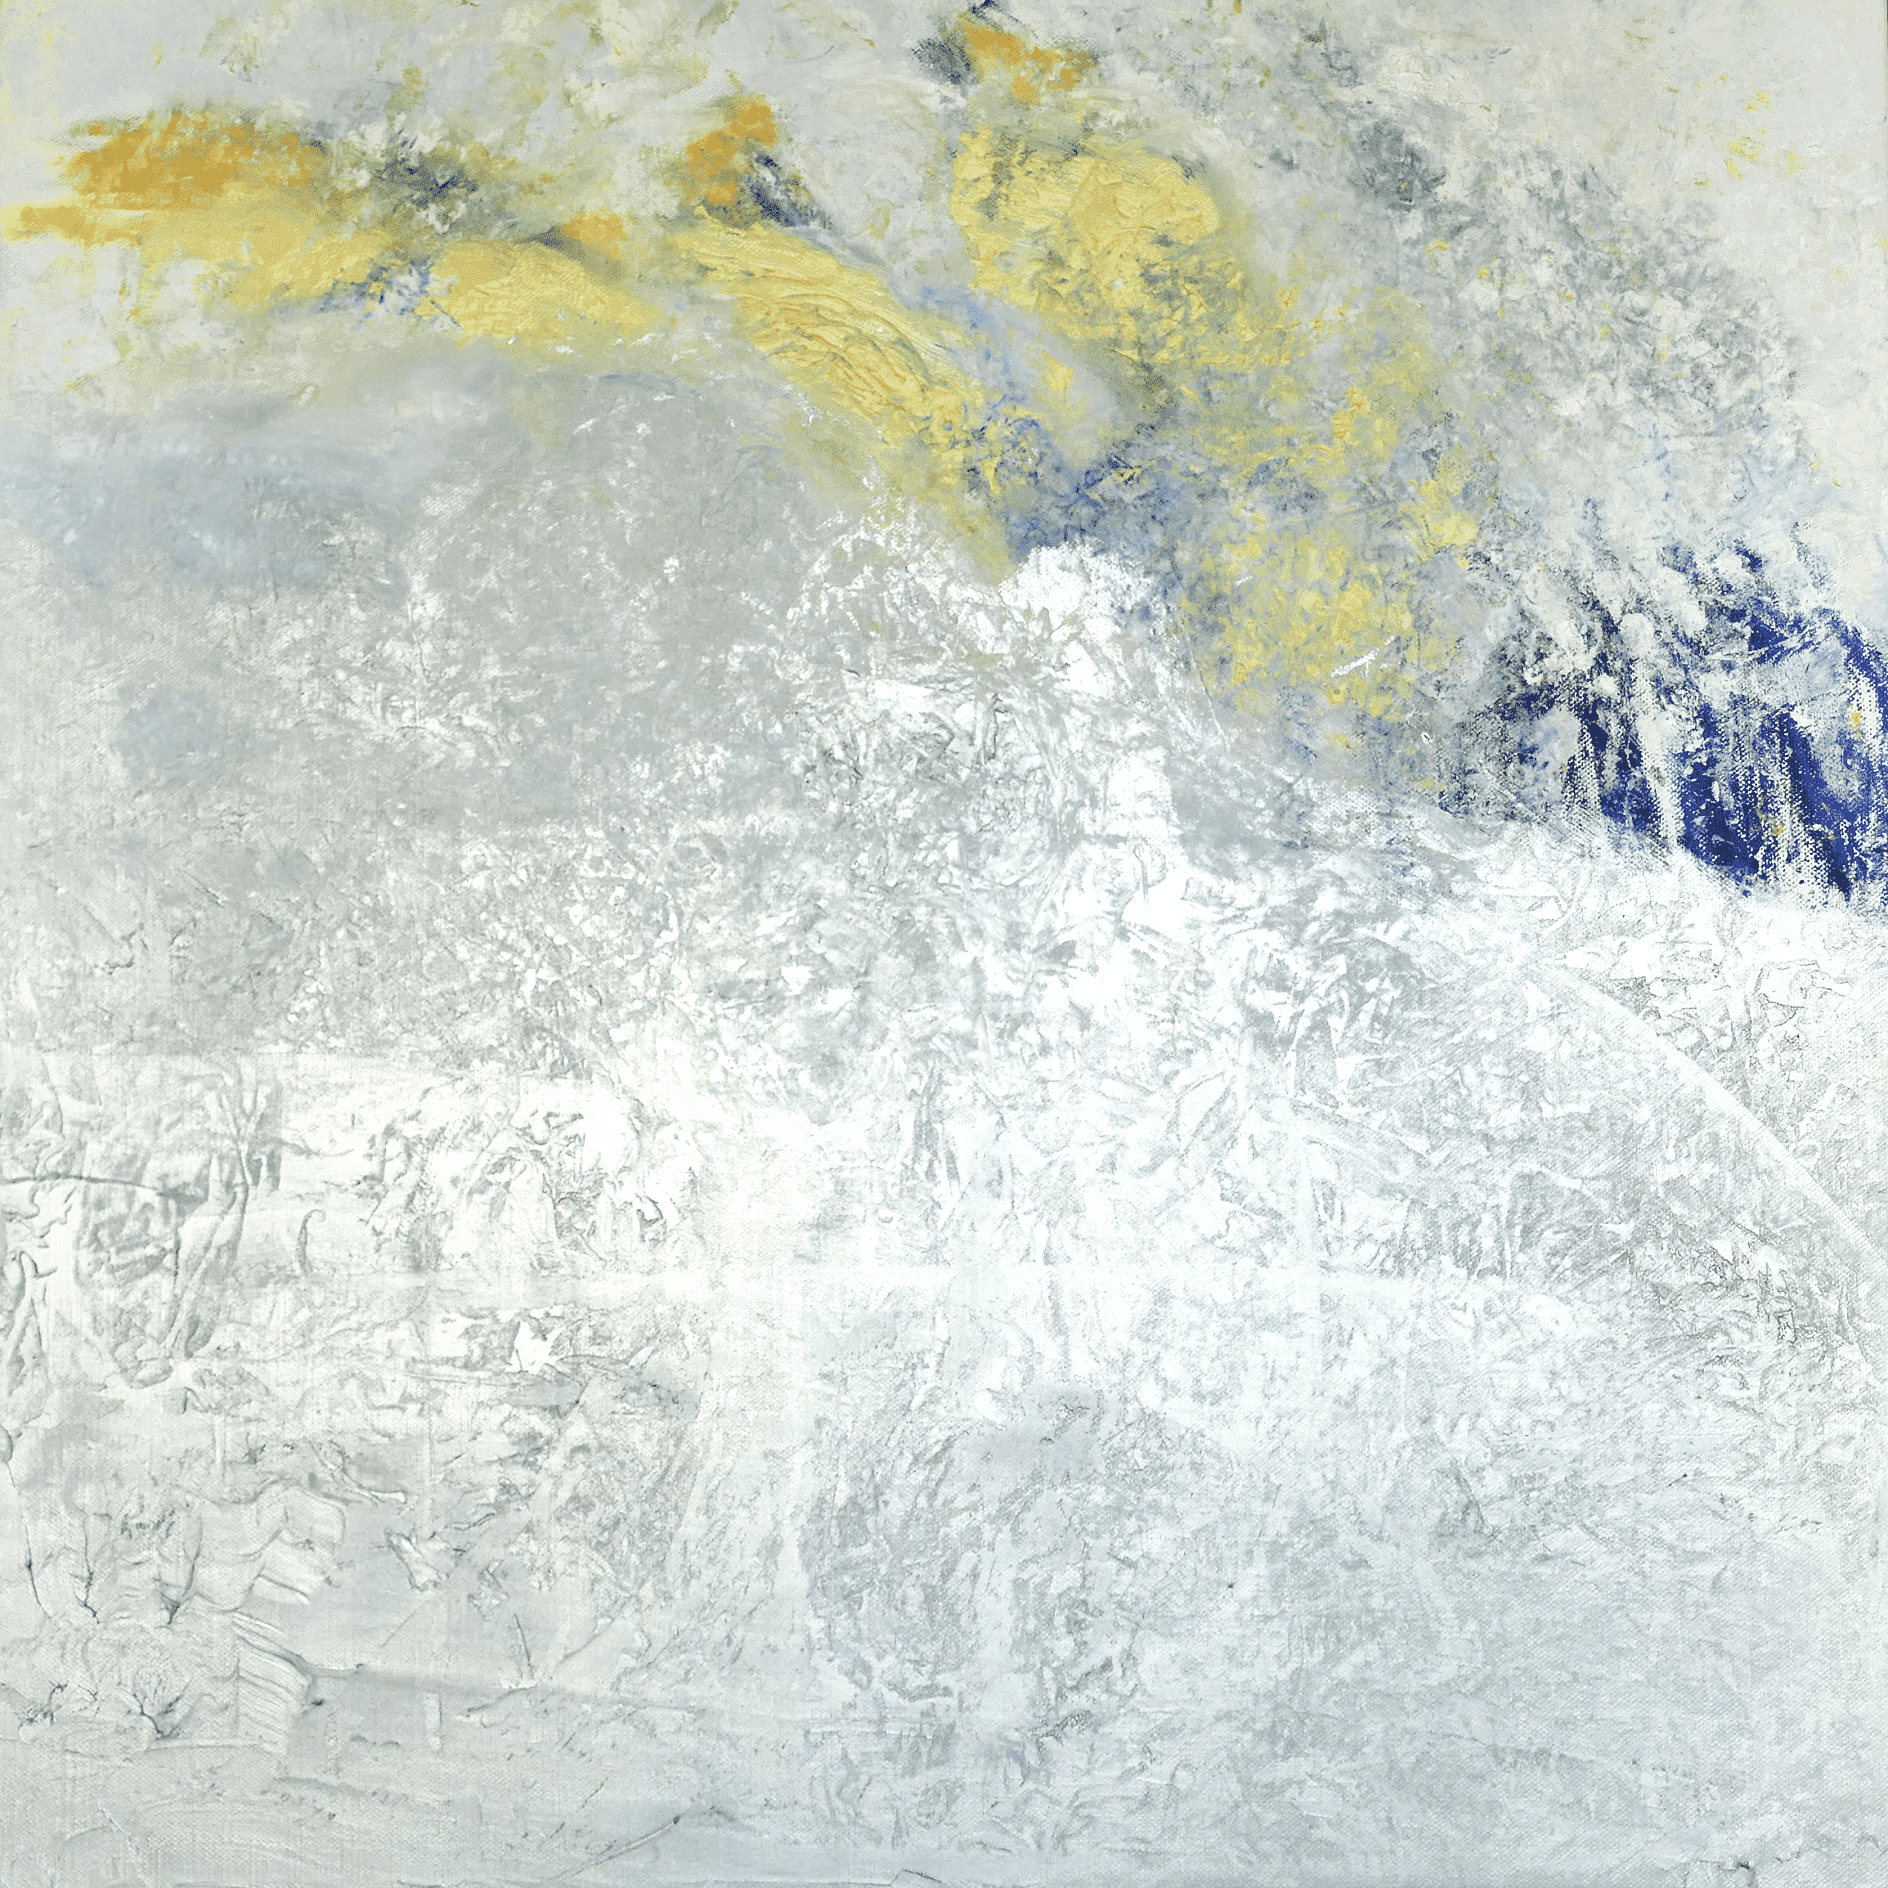 Öl auf Leinwand • oil on canvas 80 x 80 x 6 cm